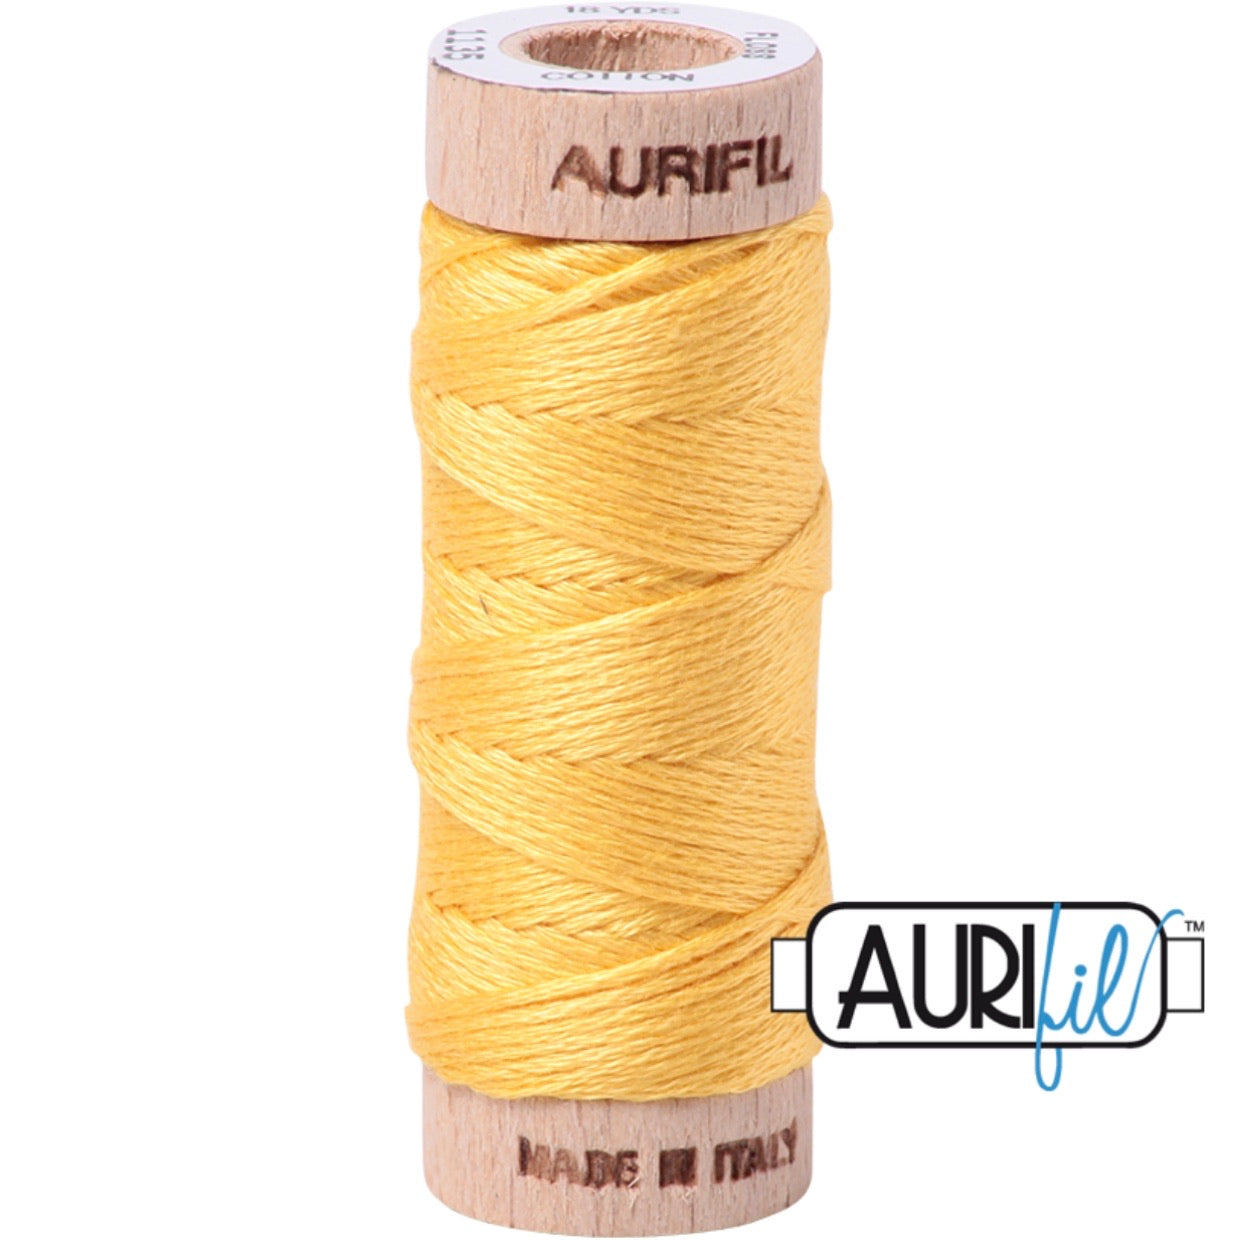 Aurifil Cotton Floss 6 Strand - 18yd - 1135 - Pale Yellow